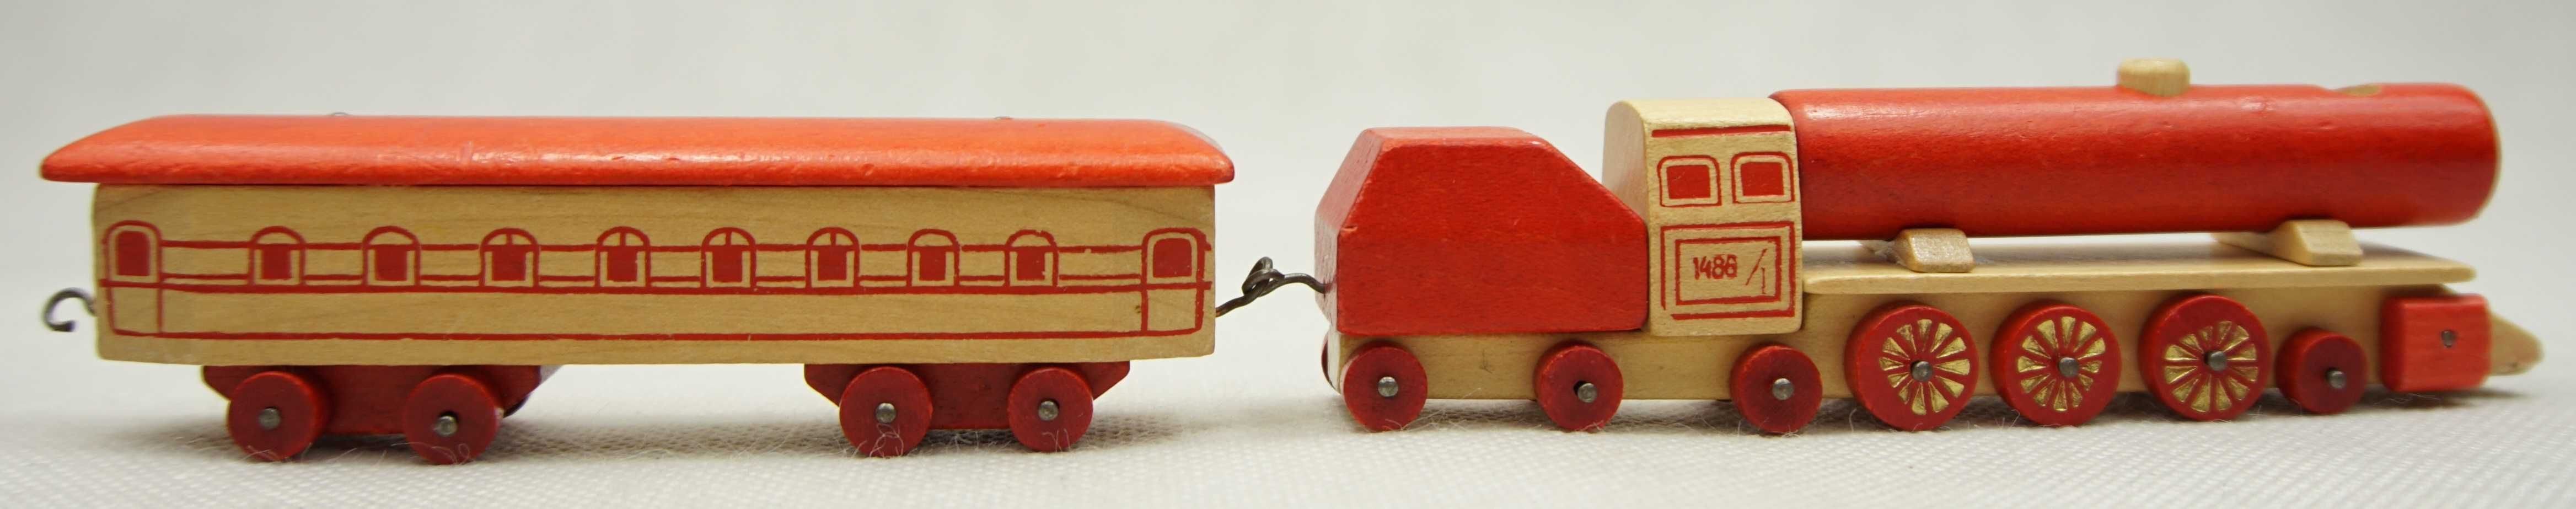 Drewniana lokomotywa z wagonem, lata 70